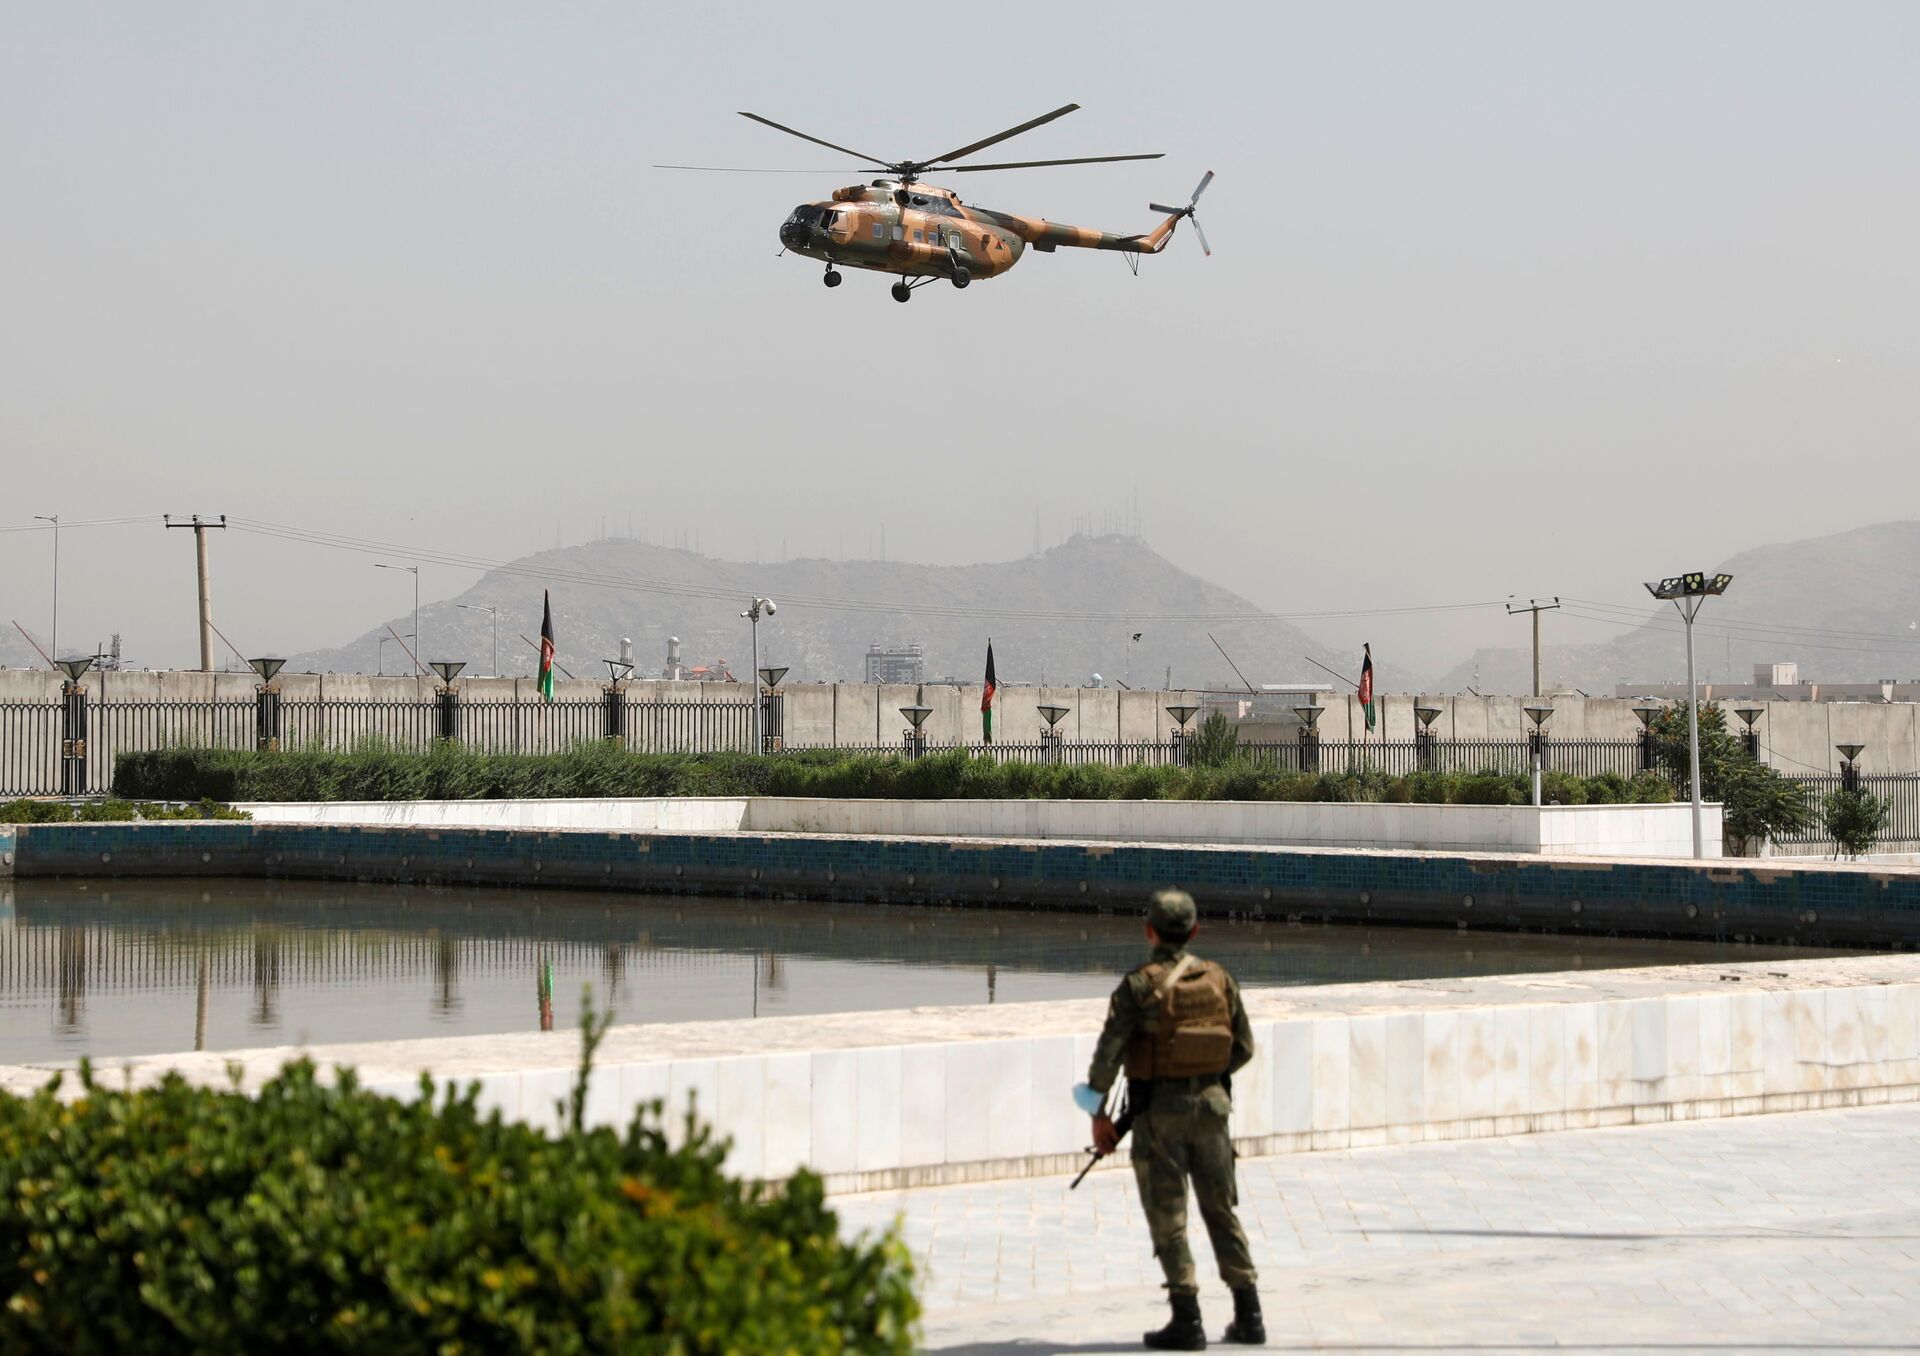 Trực thăng quân sự chở Tổng thống Afghanistan Ashraf Ghani chuẩn bị hạ cánh bên ngoài quốc hội ở Kabul, Afghanistan vào ngày 2/8/2021. - Sputnik Việt Nam, 1920, 05.10.2021